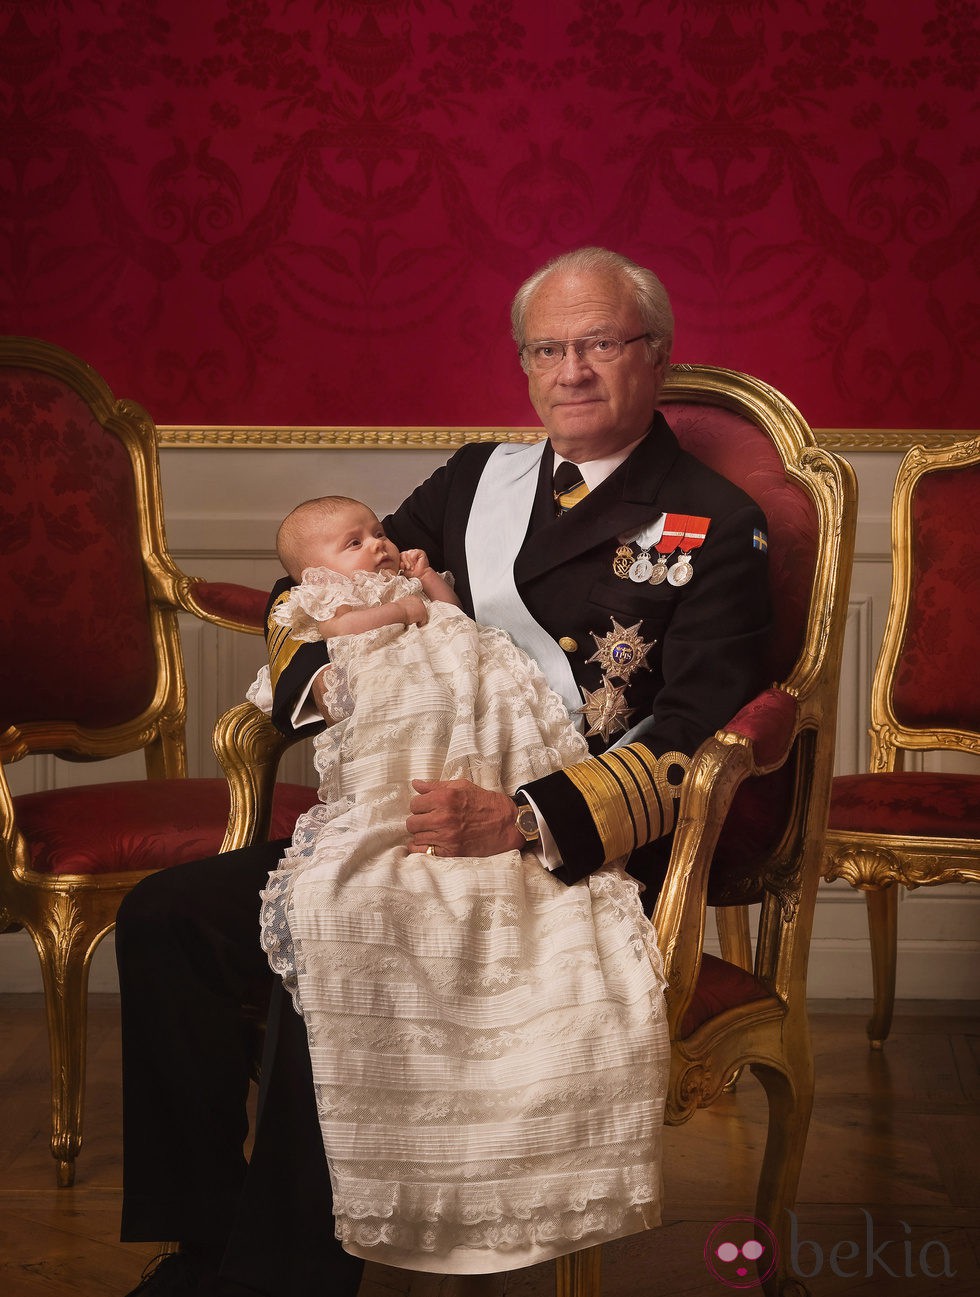 Foto oficial del Rey Carlos Gustavo de Suecia con la Princesa Estela en su bautizo